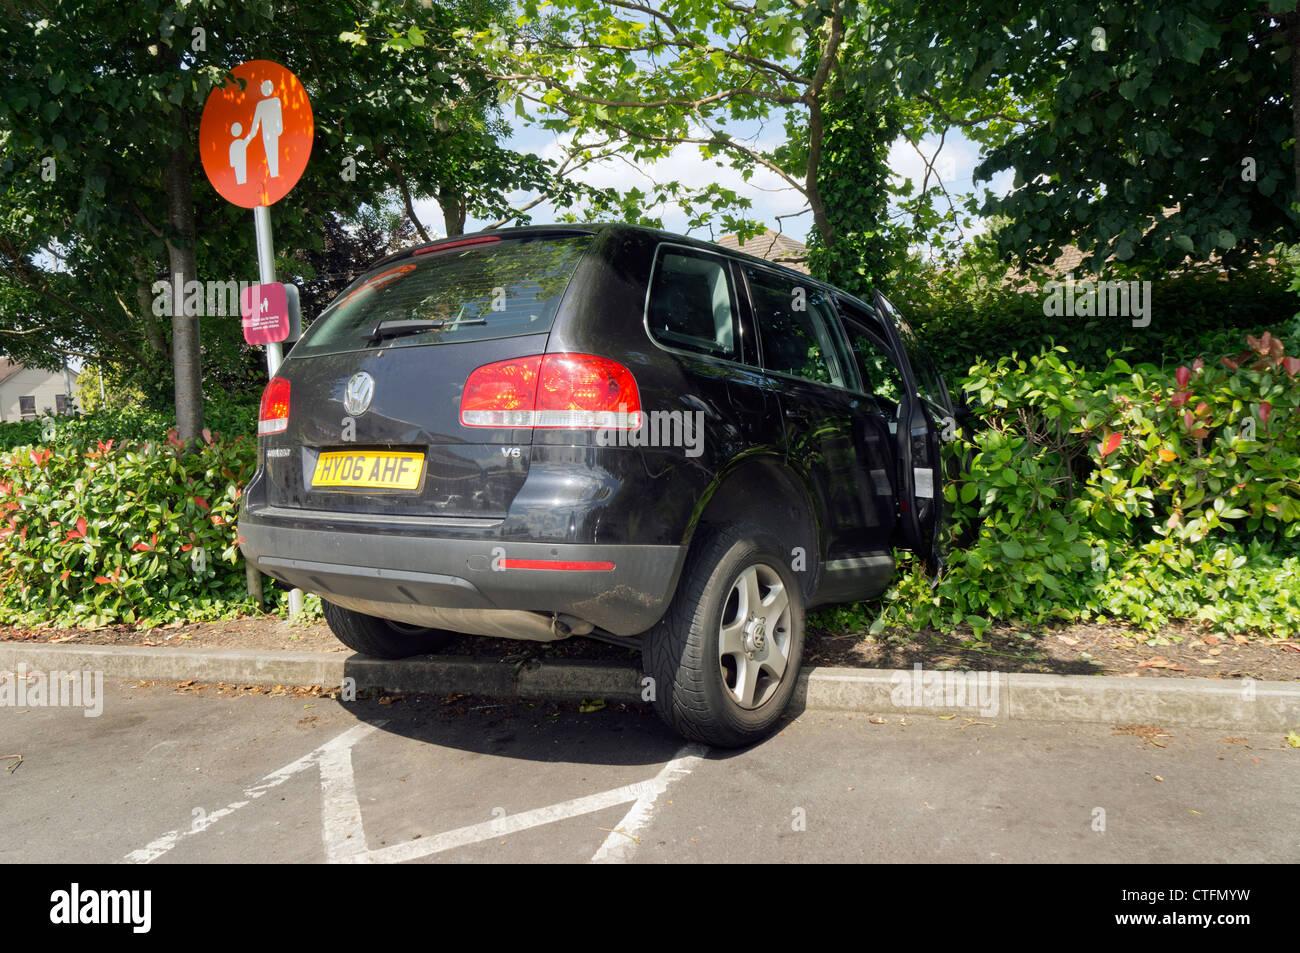 Incidente stradale: VW Touareg 4x4 VEICOLO SUV bloccato in hedge. Foto Stock